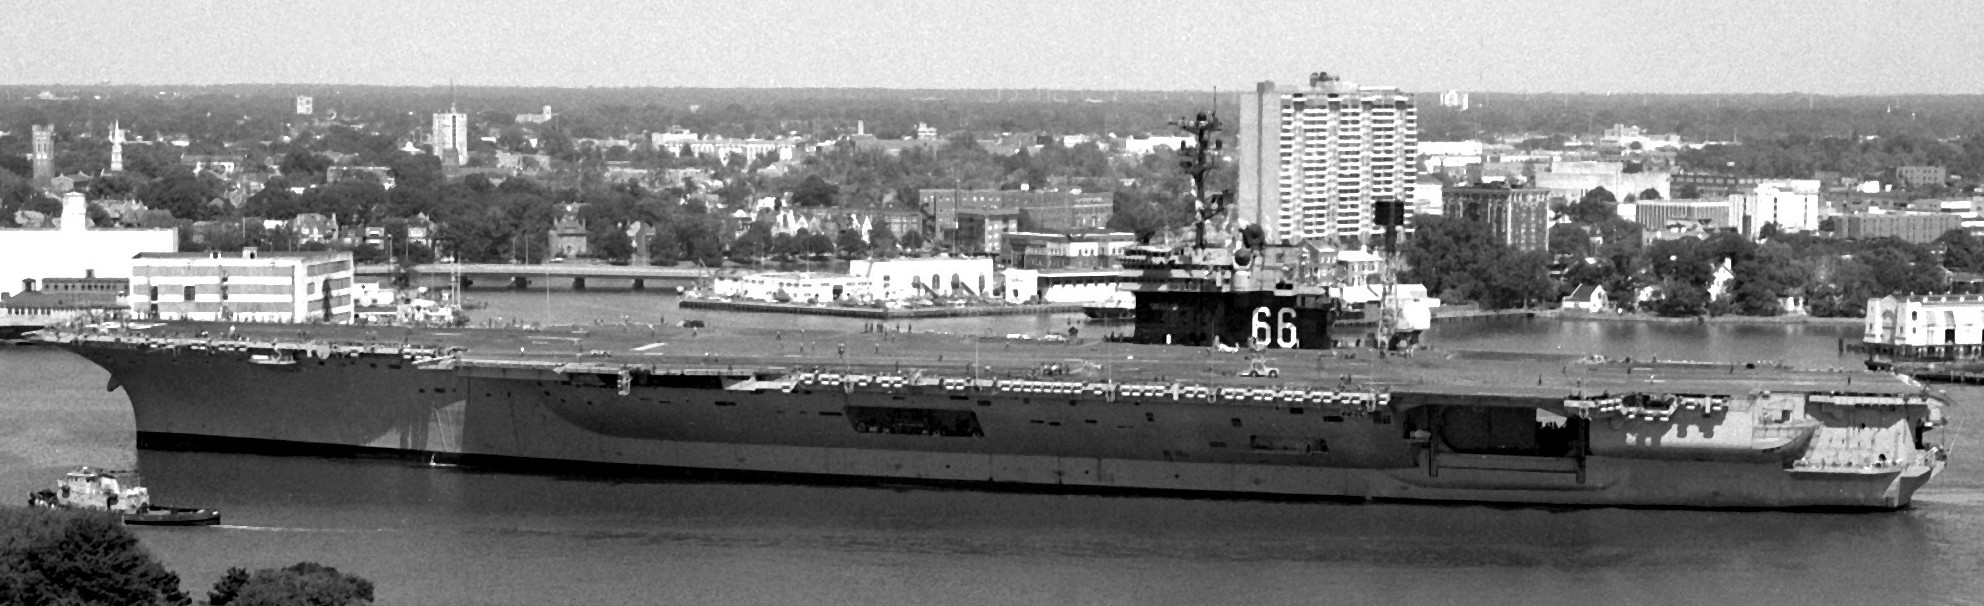 cv-66 uss america kitty hawk class aircraft carrier us navy 27